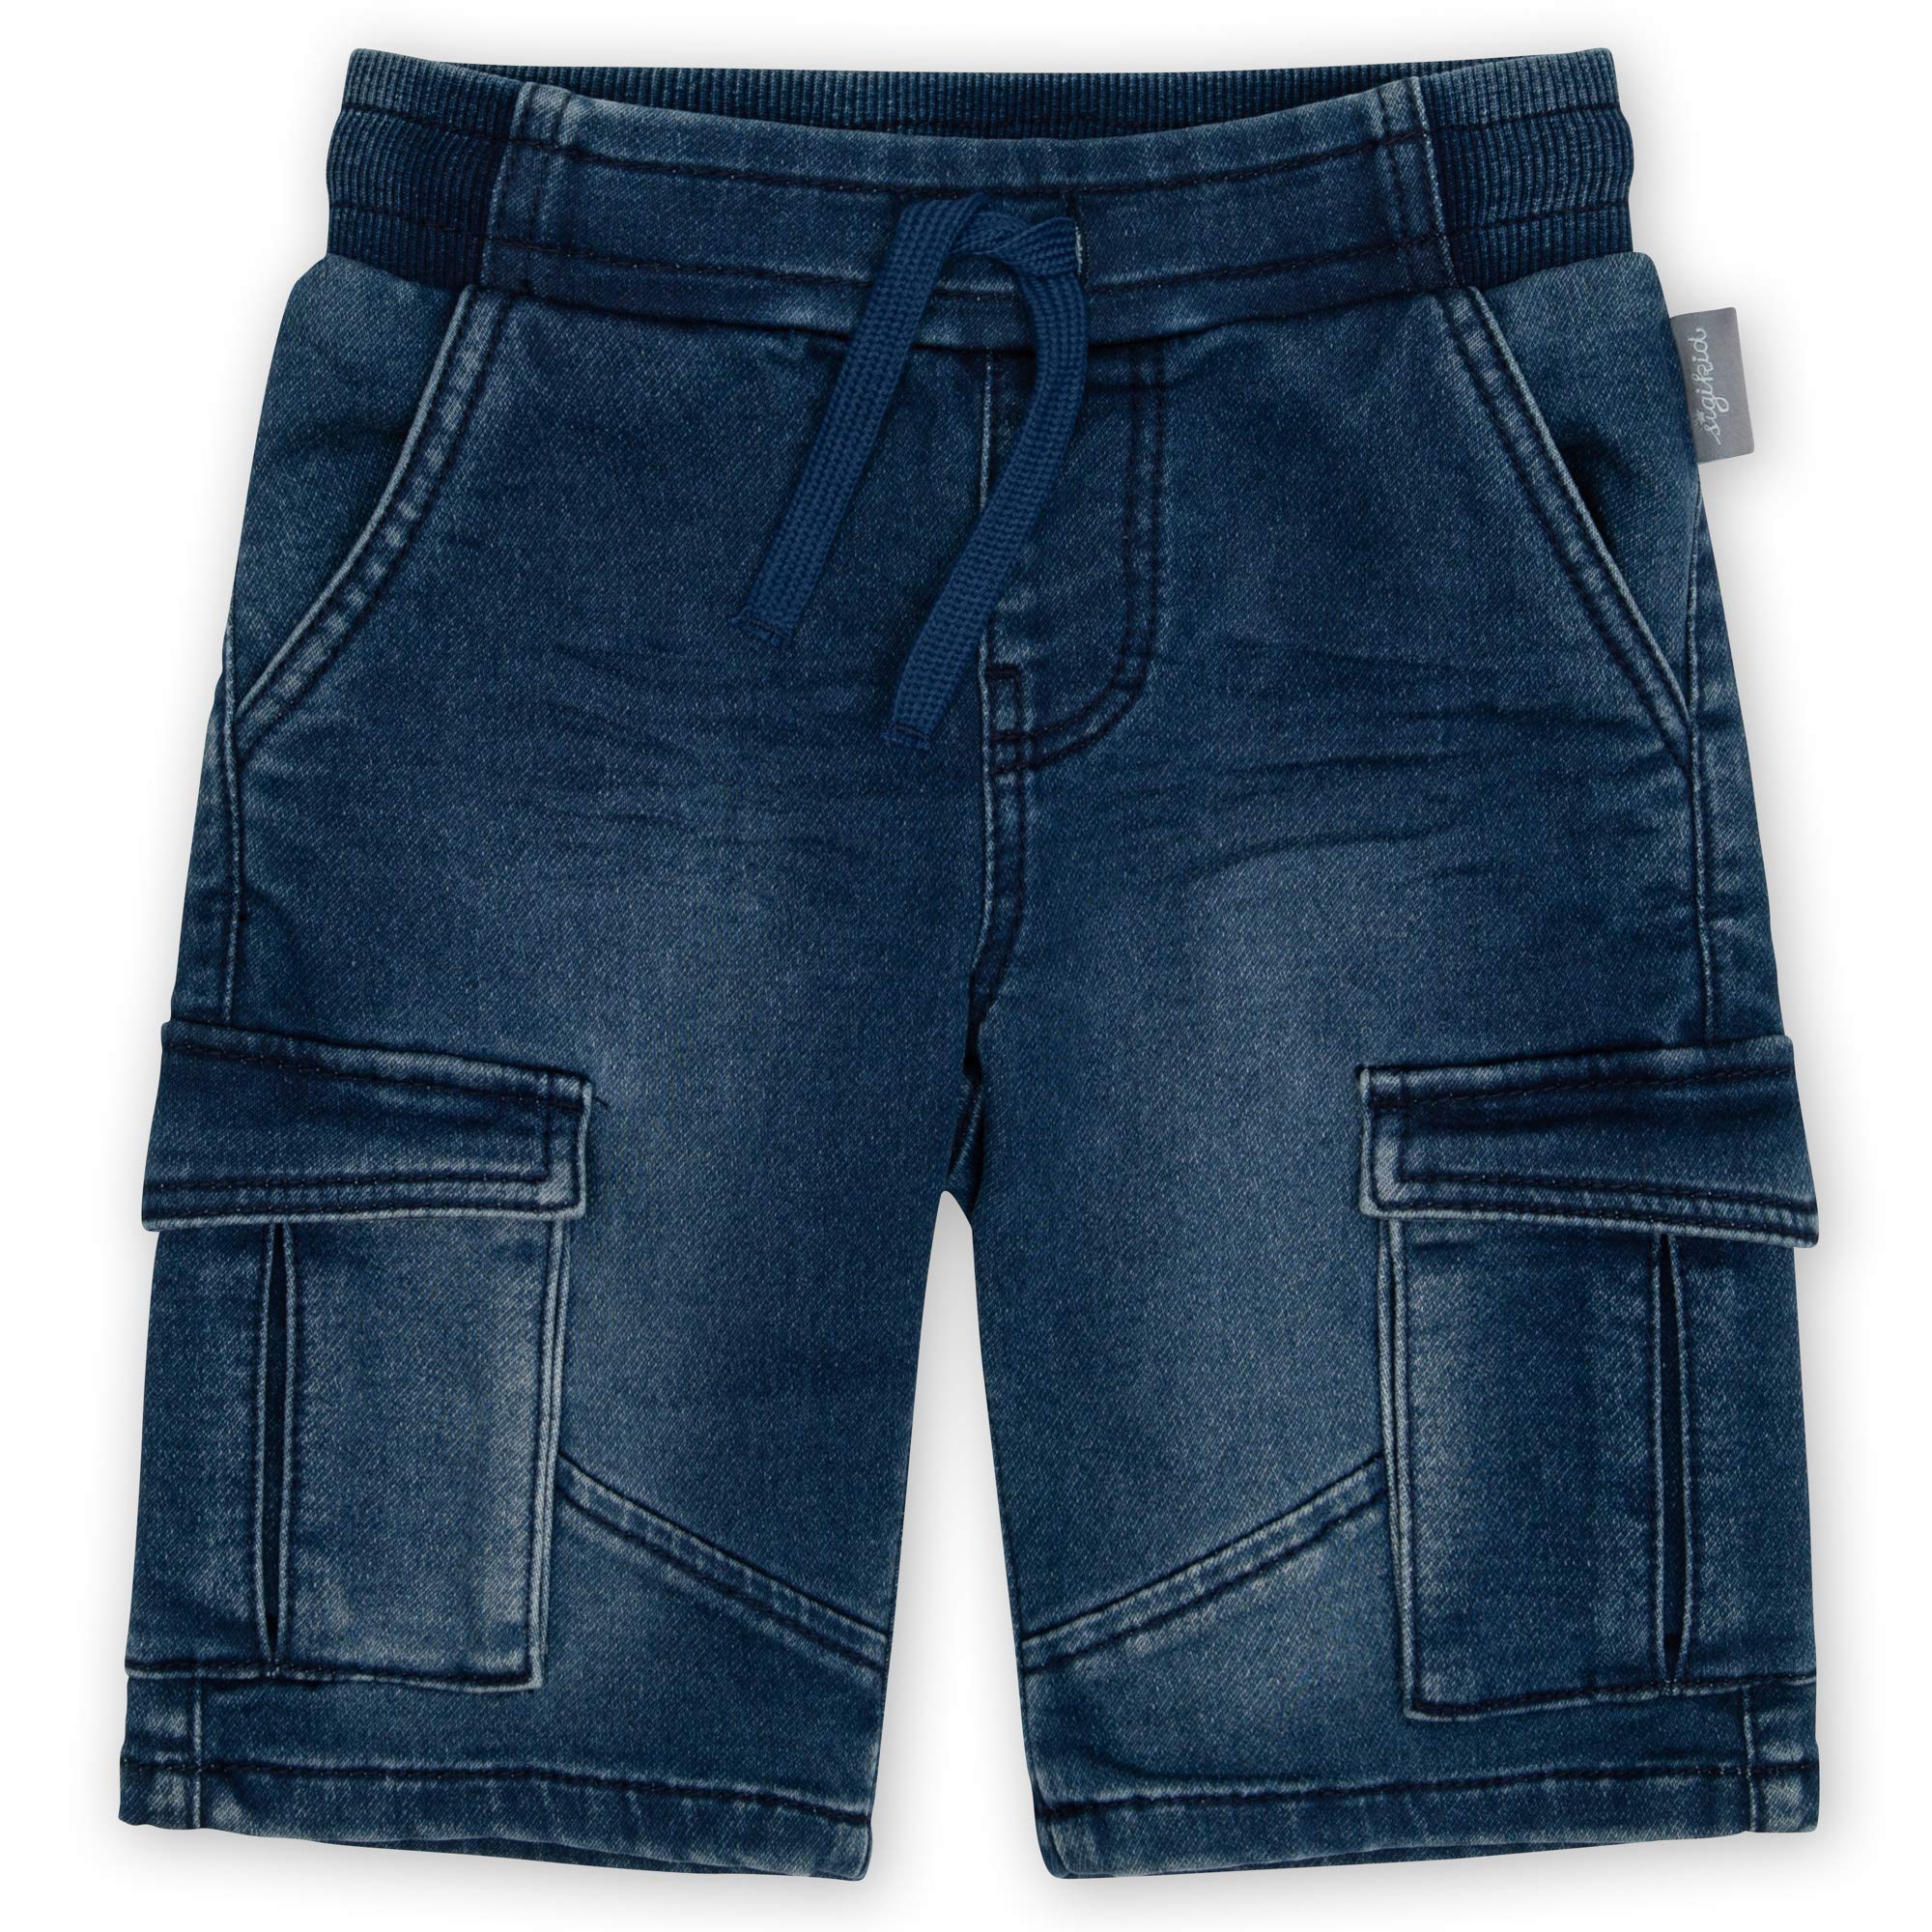 sigikid Baby Jeans Bermuda mit elastischem Schlupfbund, Bindebändchen und vier praktischen Taschen, softe Sweat Denim-Qualität und bequeme Passform, für Jungen, Größe 98 - 128